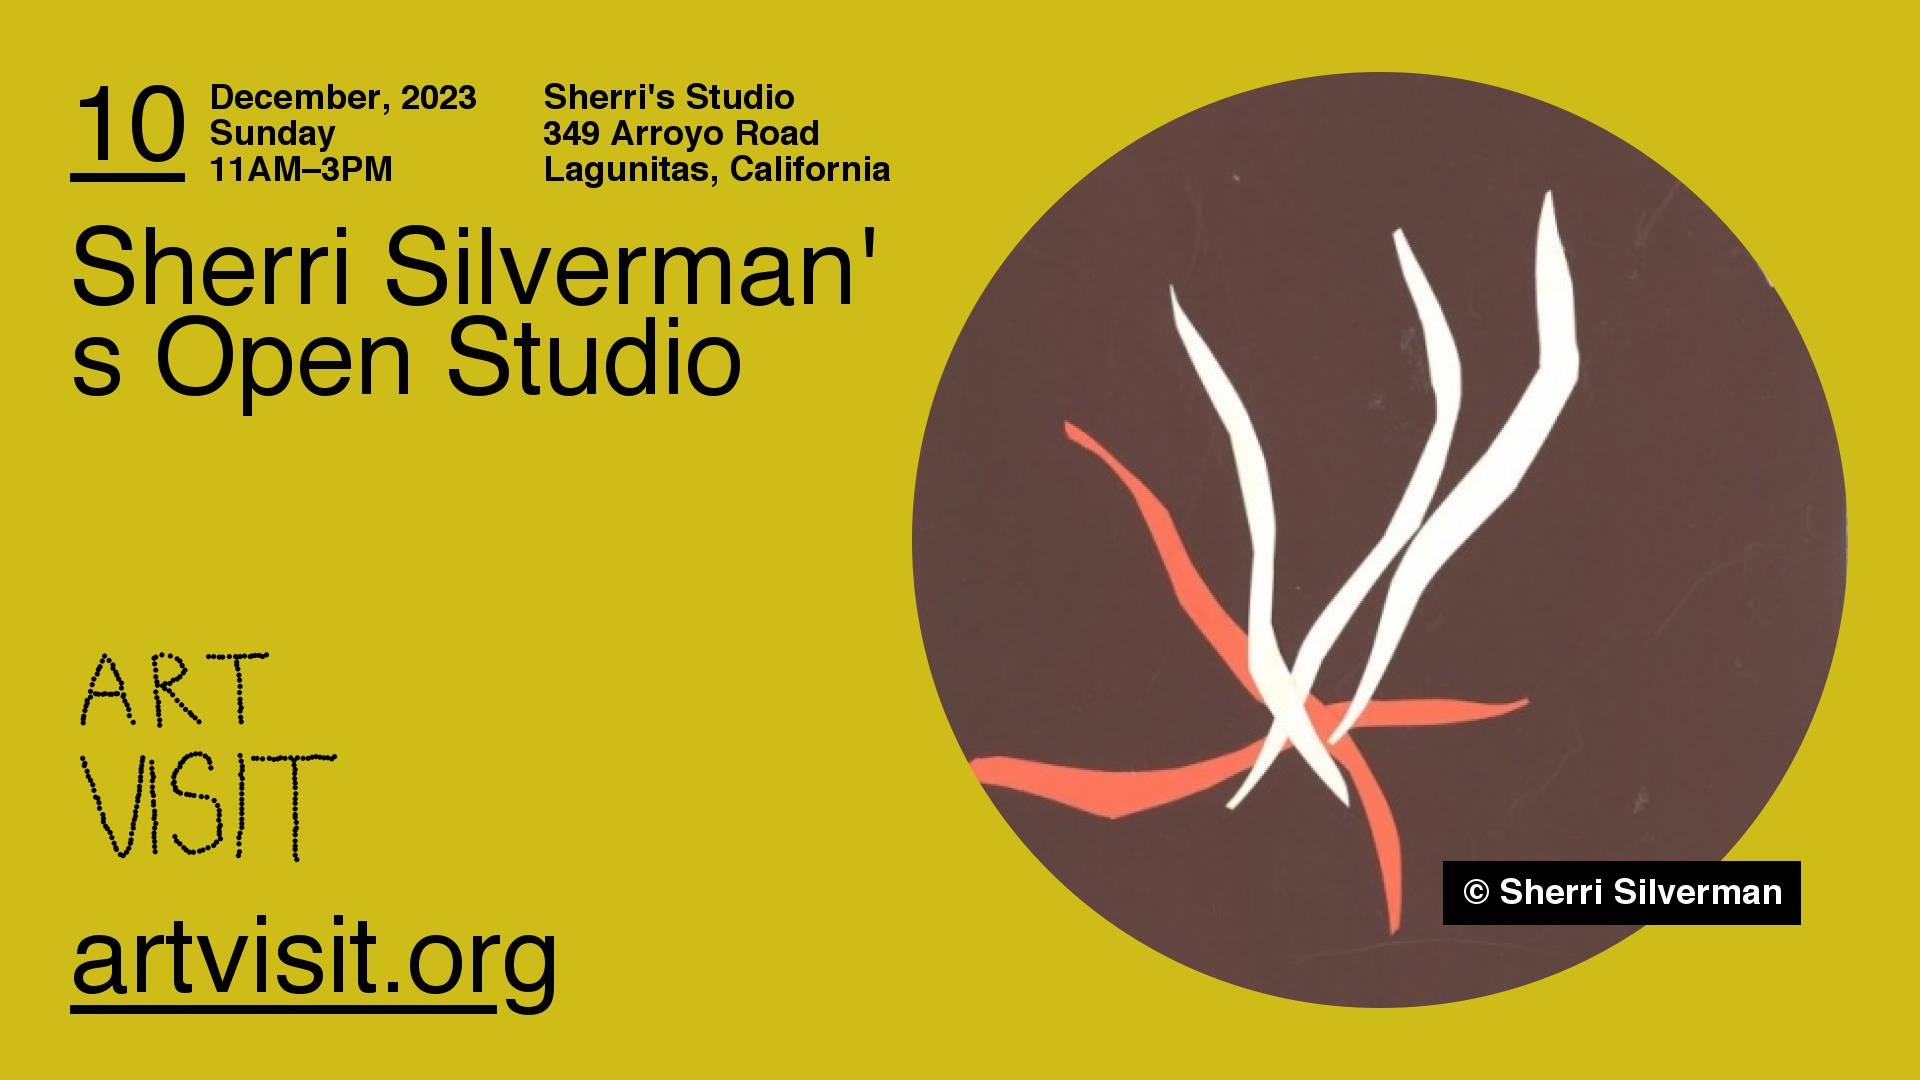 Sherri Silverman's Open Studio